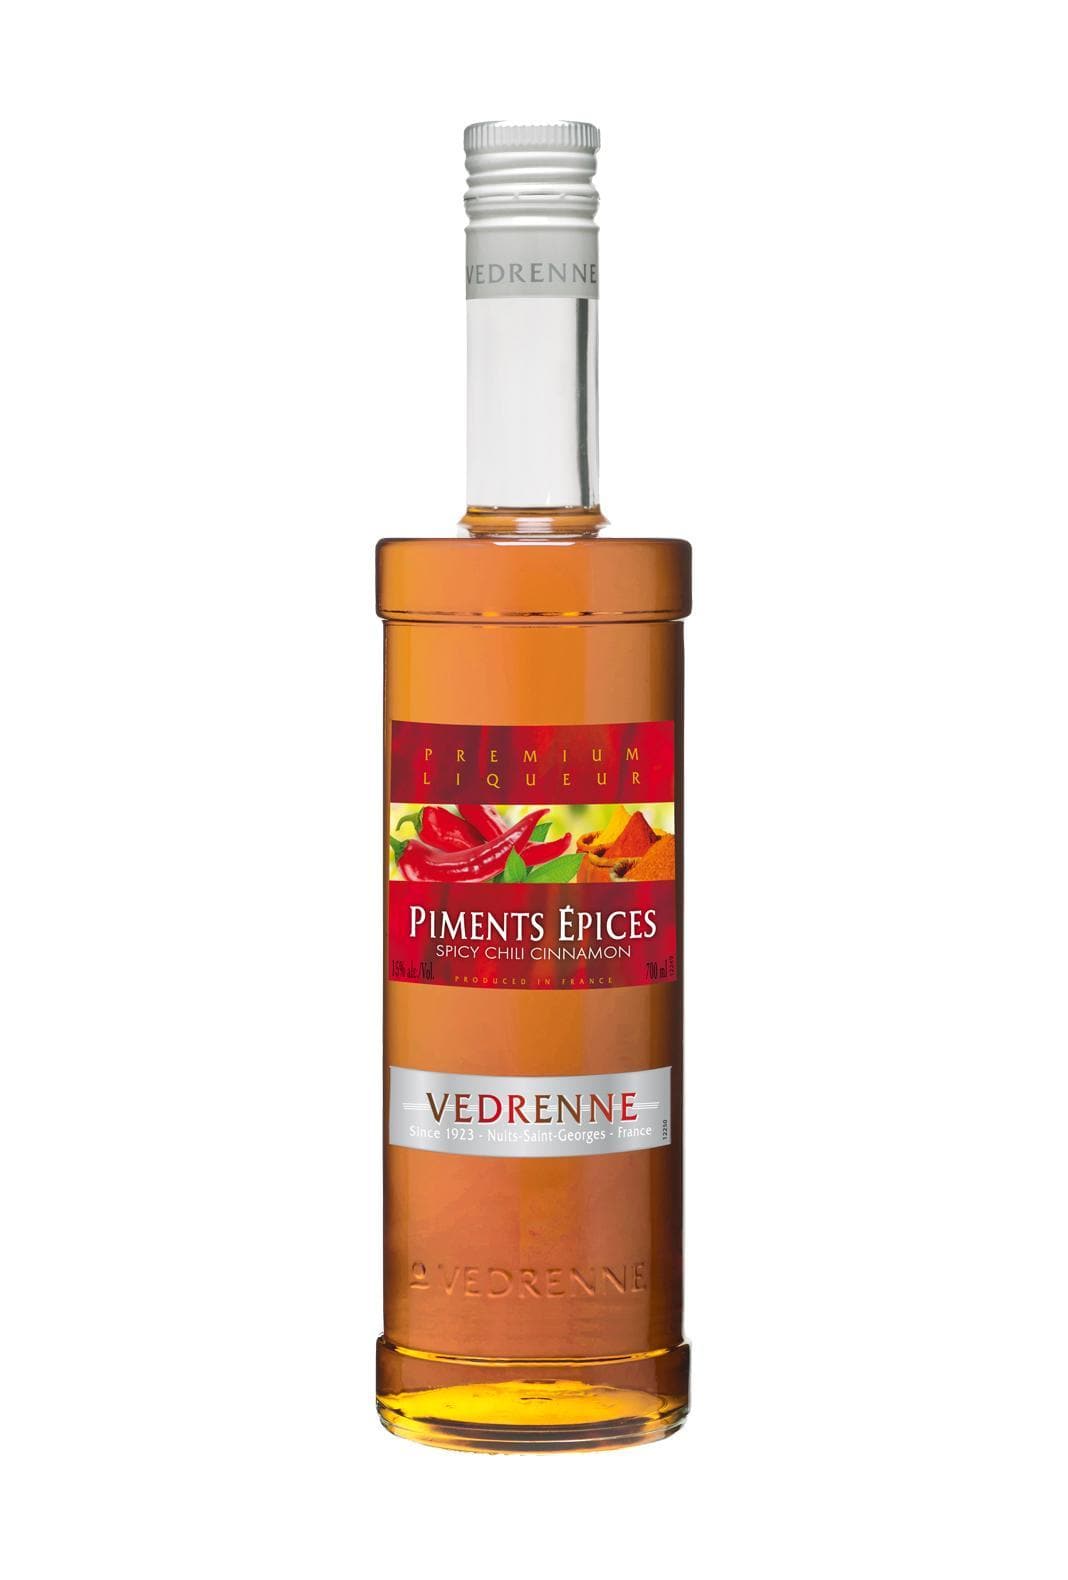 Vedrenne Liqueur Piments Epices (Spicy Chili Cinnamon) 15% 700ml | Liqueurs | Shop online at Spirits of France